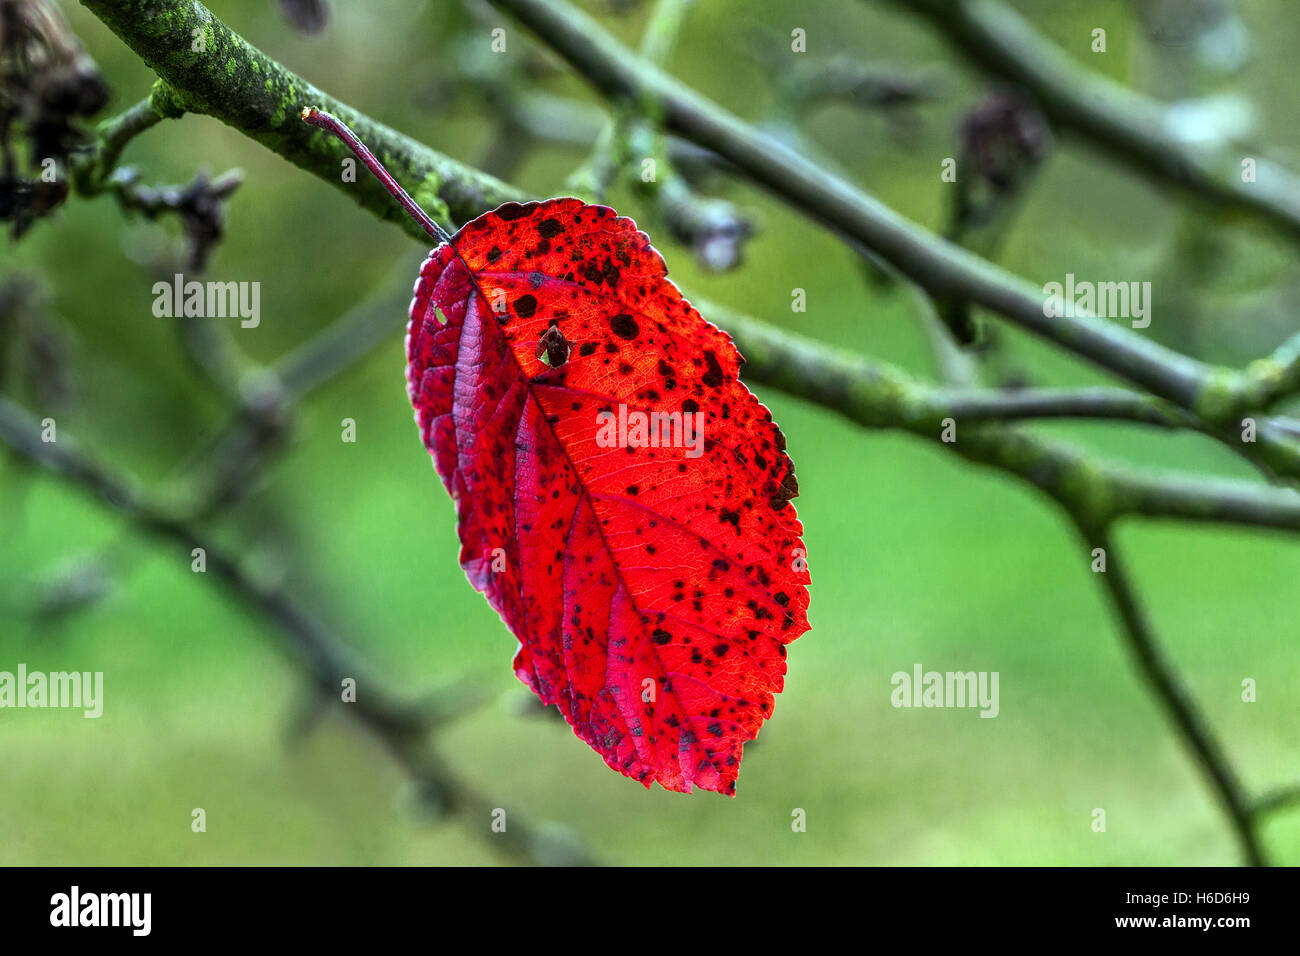 Das letzte rote Blatt, das noch auf dem Zweig blieb Oktober Herbst rötlichen Blatt Stockfoto